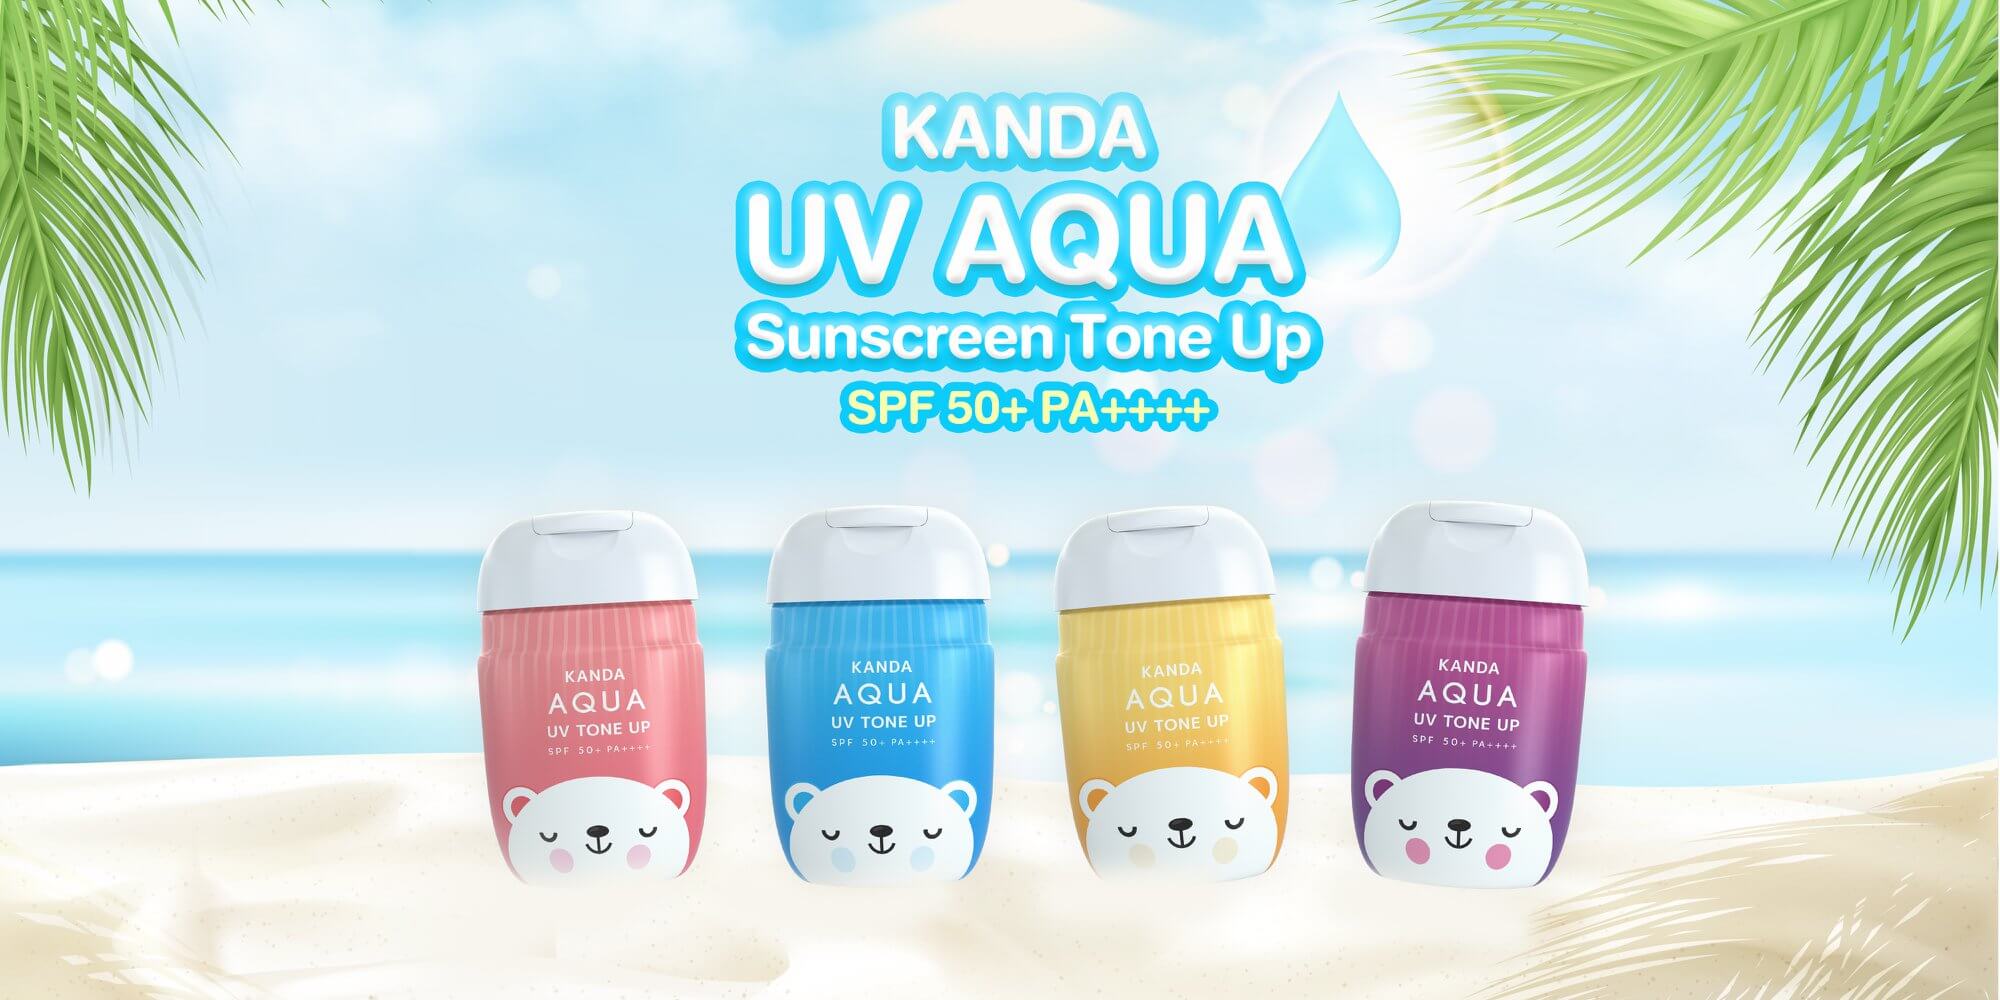 Kanda UV AQUA Sunscreen Tone Up SPF50 PA +++ 30 ml มี 4 สูตรให้เลือก  - Pinky Tone Up ผิวขาวกระจ่างใสผิวอมชมพู  - White Tone Up ผิวขาวกระจ่างใส หน้าไบร์ท ไม่ดรอป  - Nude Tone Up ผิวที่ต้องปกปิดรอย สีธรรมชาติไม่ลอยเข้าไดุ้ทุกสภาพผิว  - Glow Tone Up ผิวขาวกระจ่างใส หน้าโกลว์ ฉ่ำ ไม่มัน